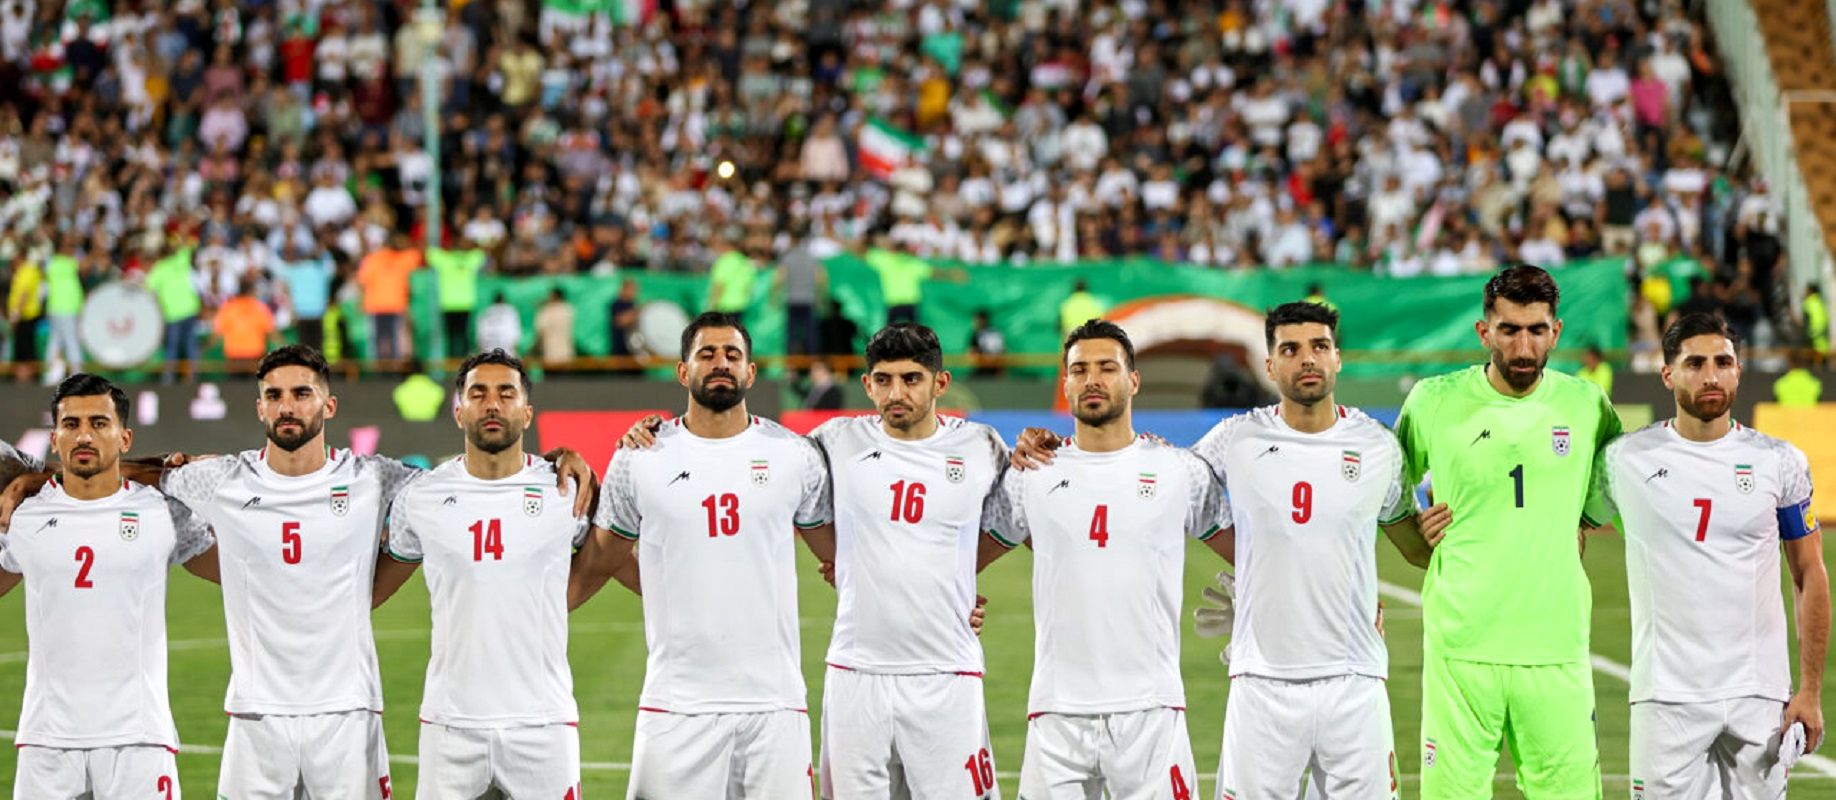 قرعه کشی بازی های جام جهانی انجام شد / ایران از قطر انتقام می گیرد؟+ جدول